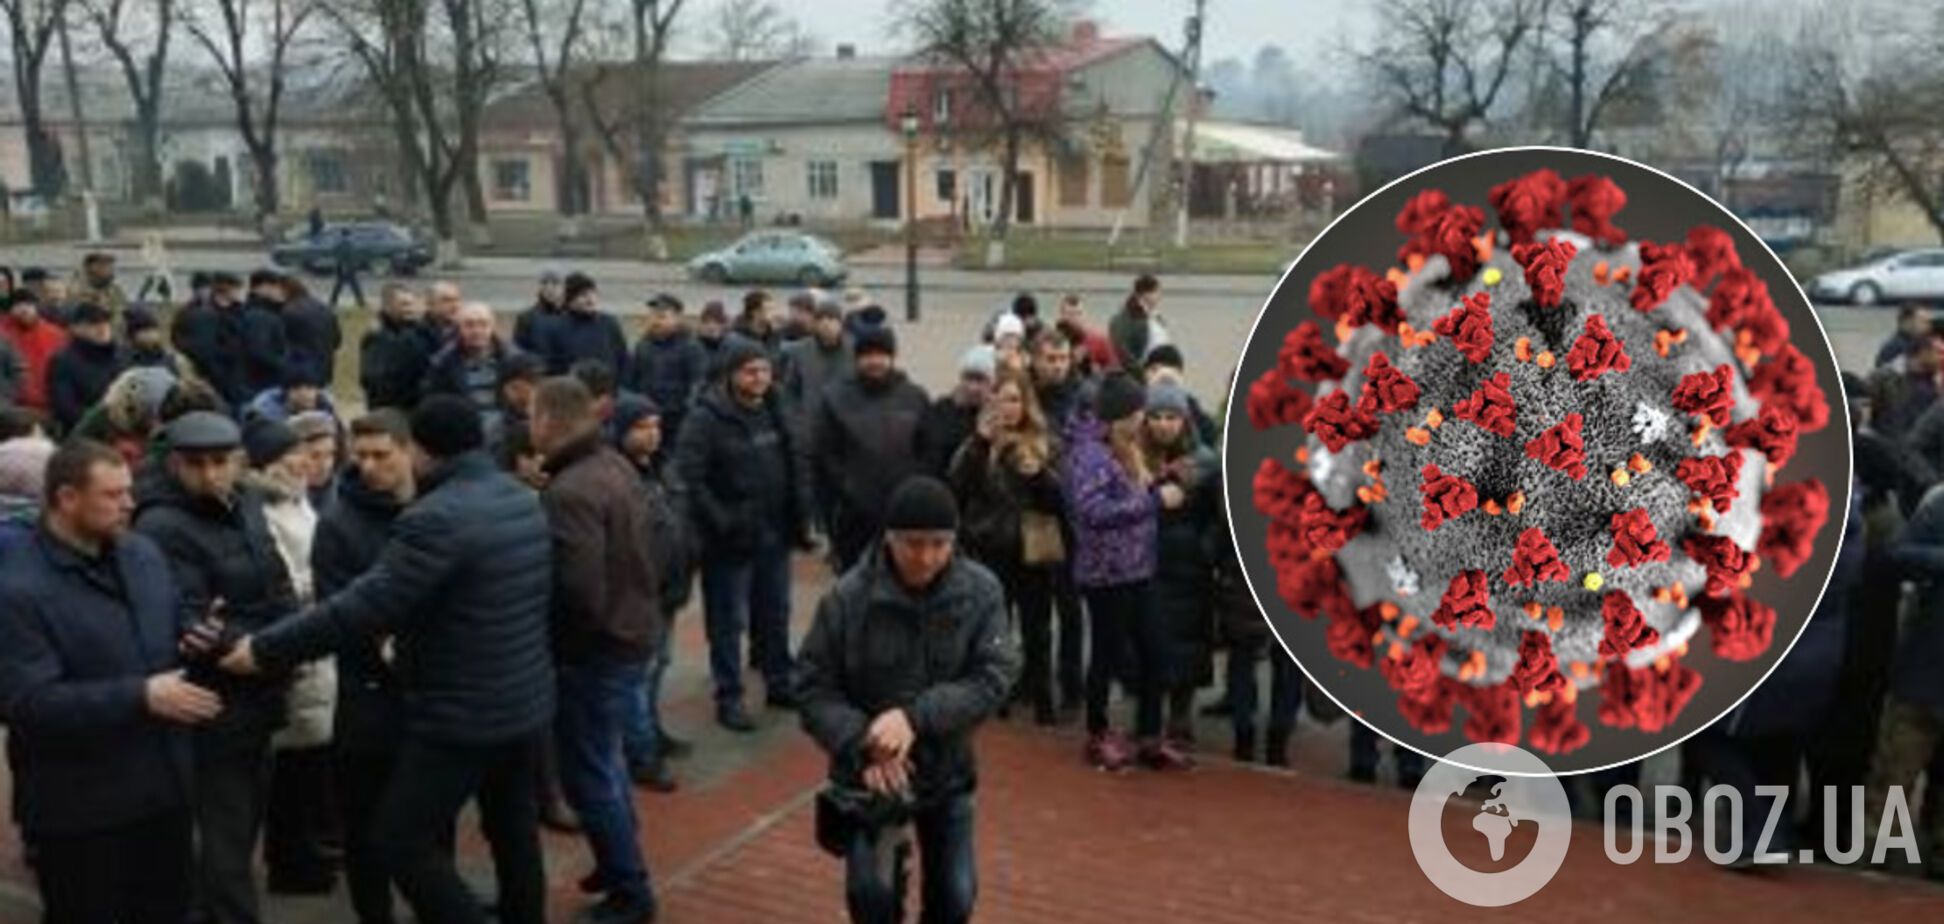 'Не дай Бог, заболеем': под Тернополем устроили агрессивную блокаду против коронавируса